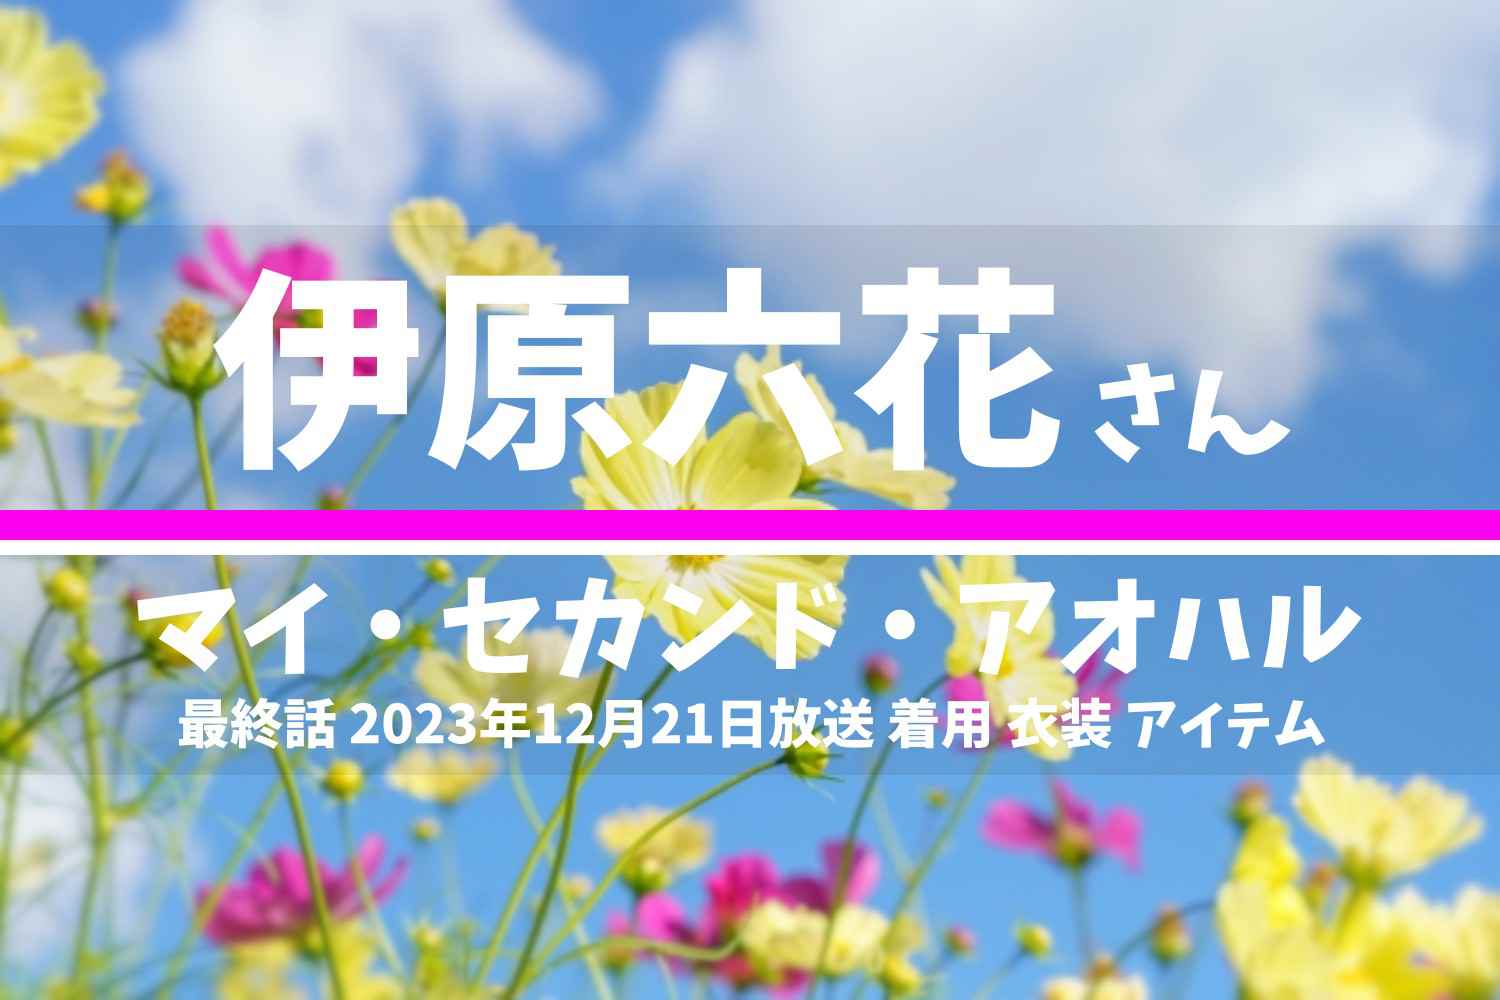 マイ・セカンド・アオハル 伊原六花さん テレビドラマ 衣装 2023年12月19日放送